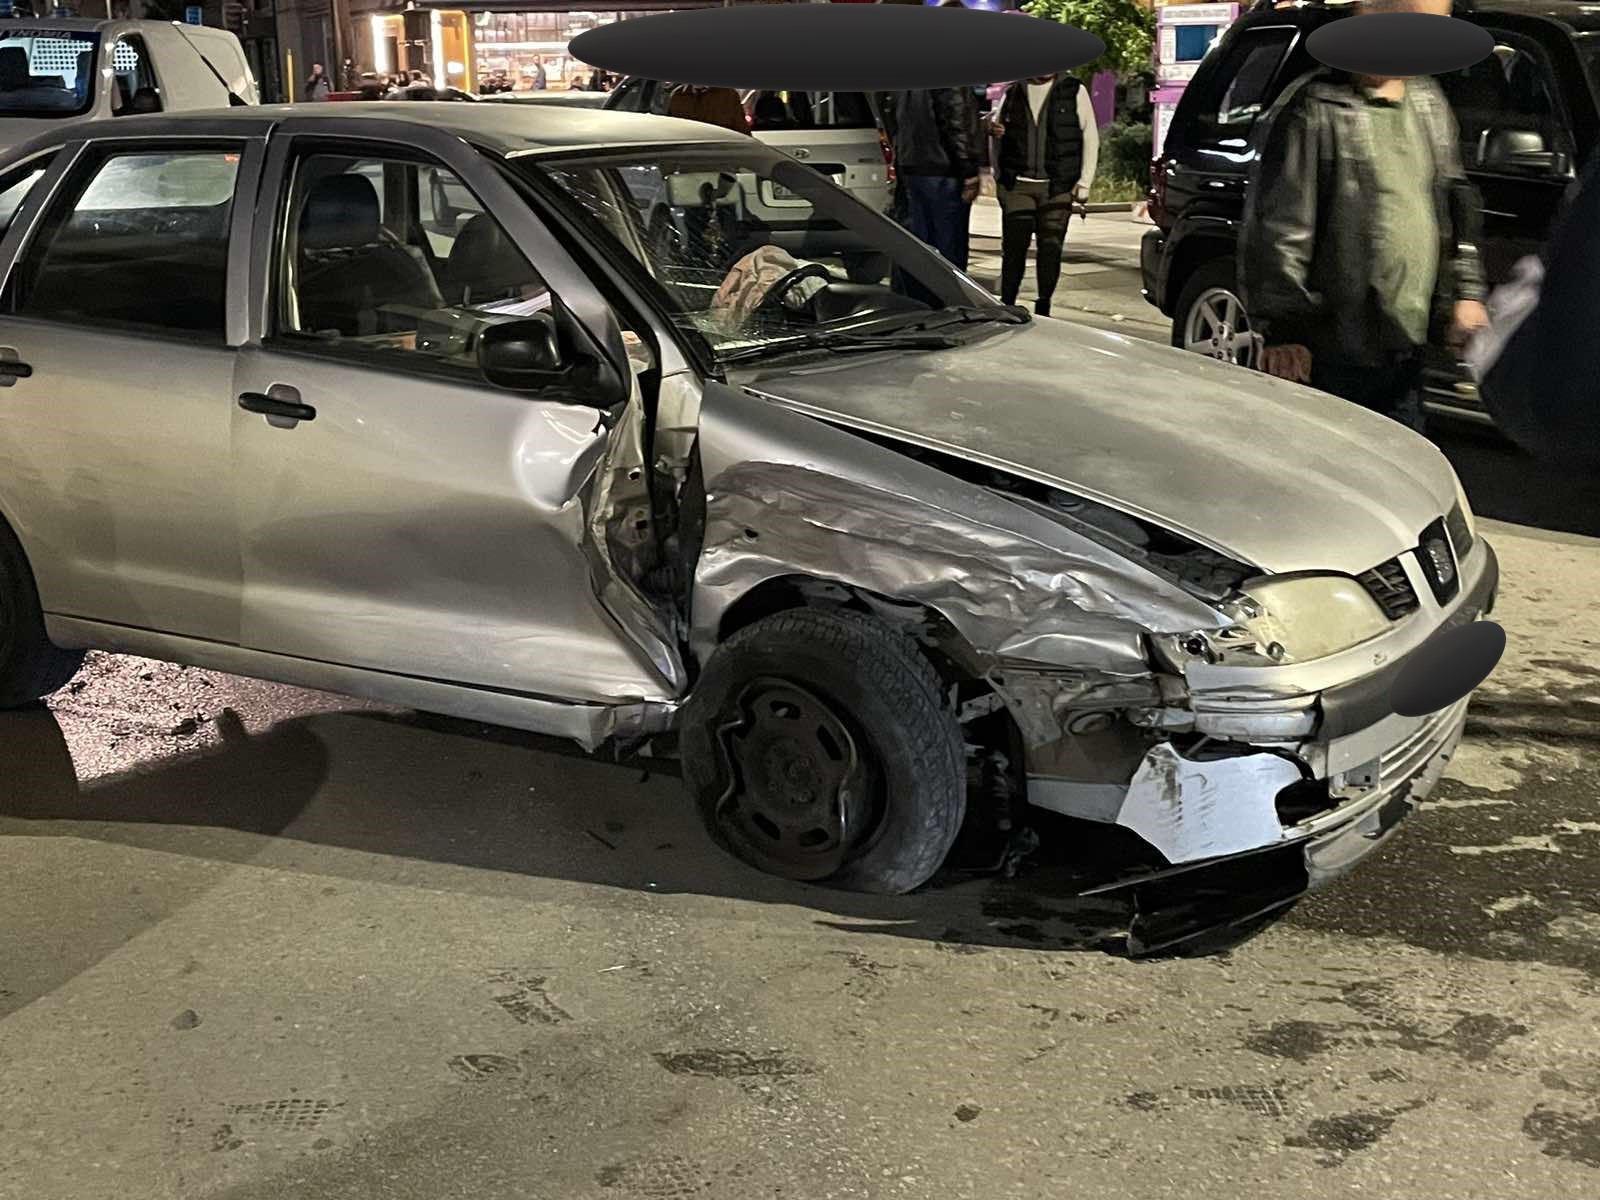 Λάρισα: Αυτοκίνητο παρέσυρε και τραυμάτισε ανήλικο, αφού πρώτα προσέκρουσε σε άλλα οχήματα